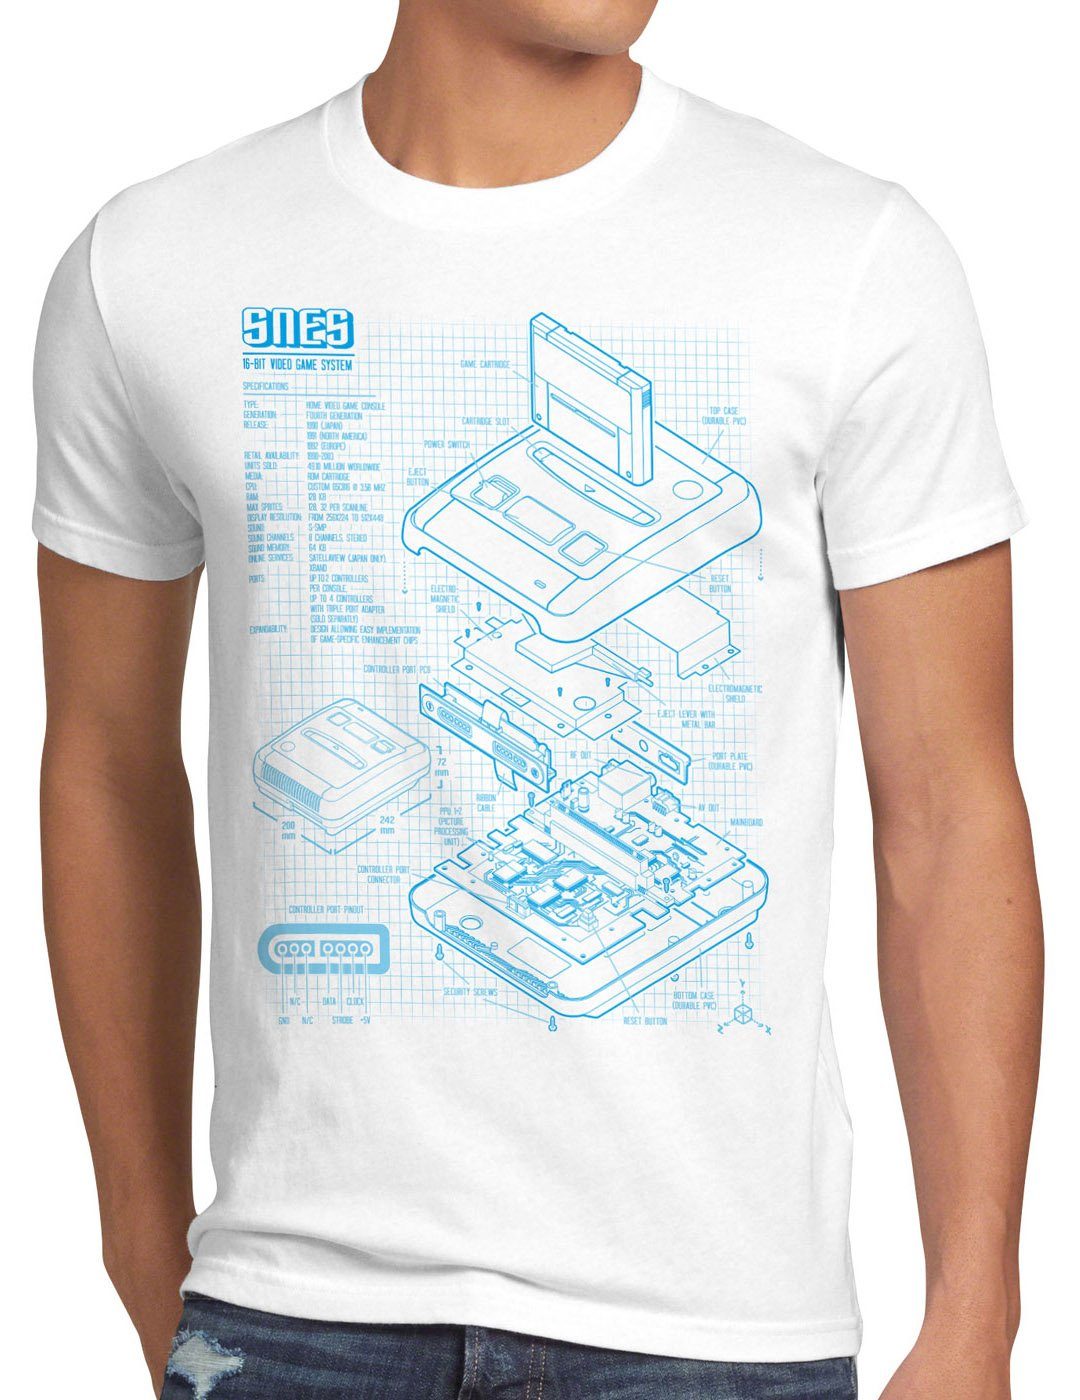 style3 Print-Shirt T-Shirt weiß Blaupause Herren Videospiel SNES 16-Bit